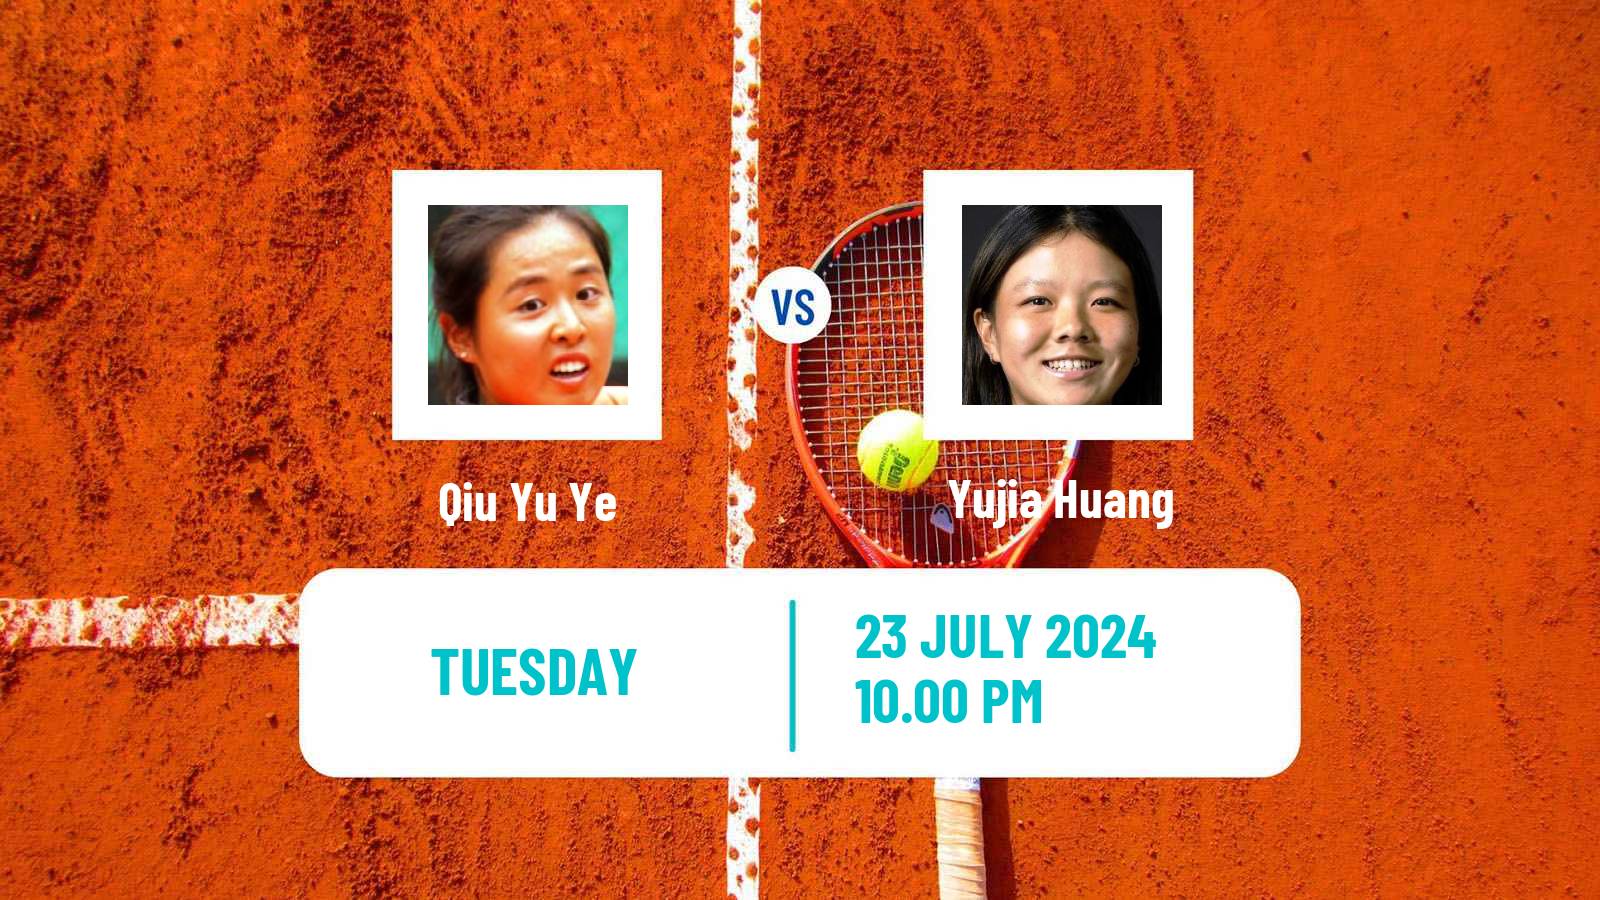 Tennis ITF W35 Naiman Women Qiu Yu Ye - Yujia Huang